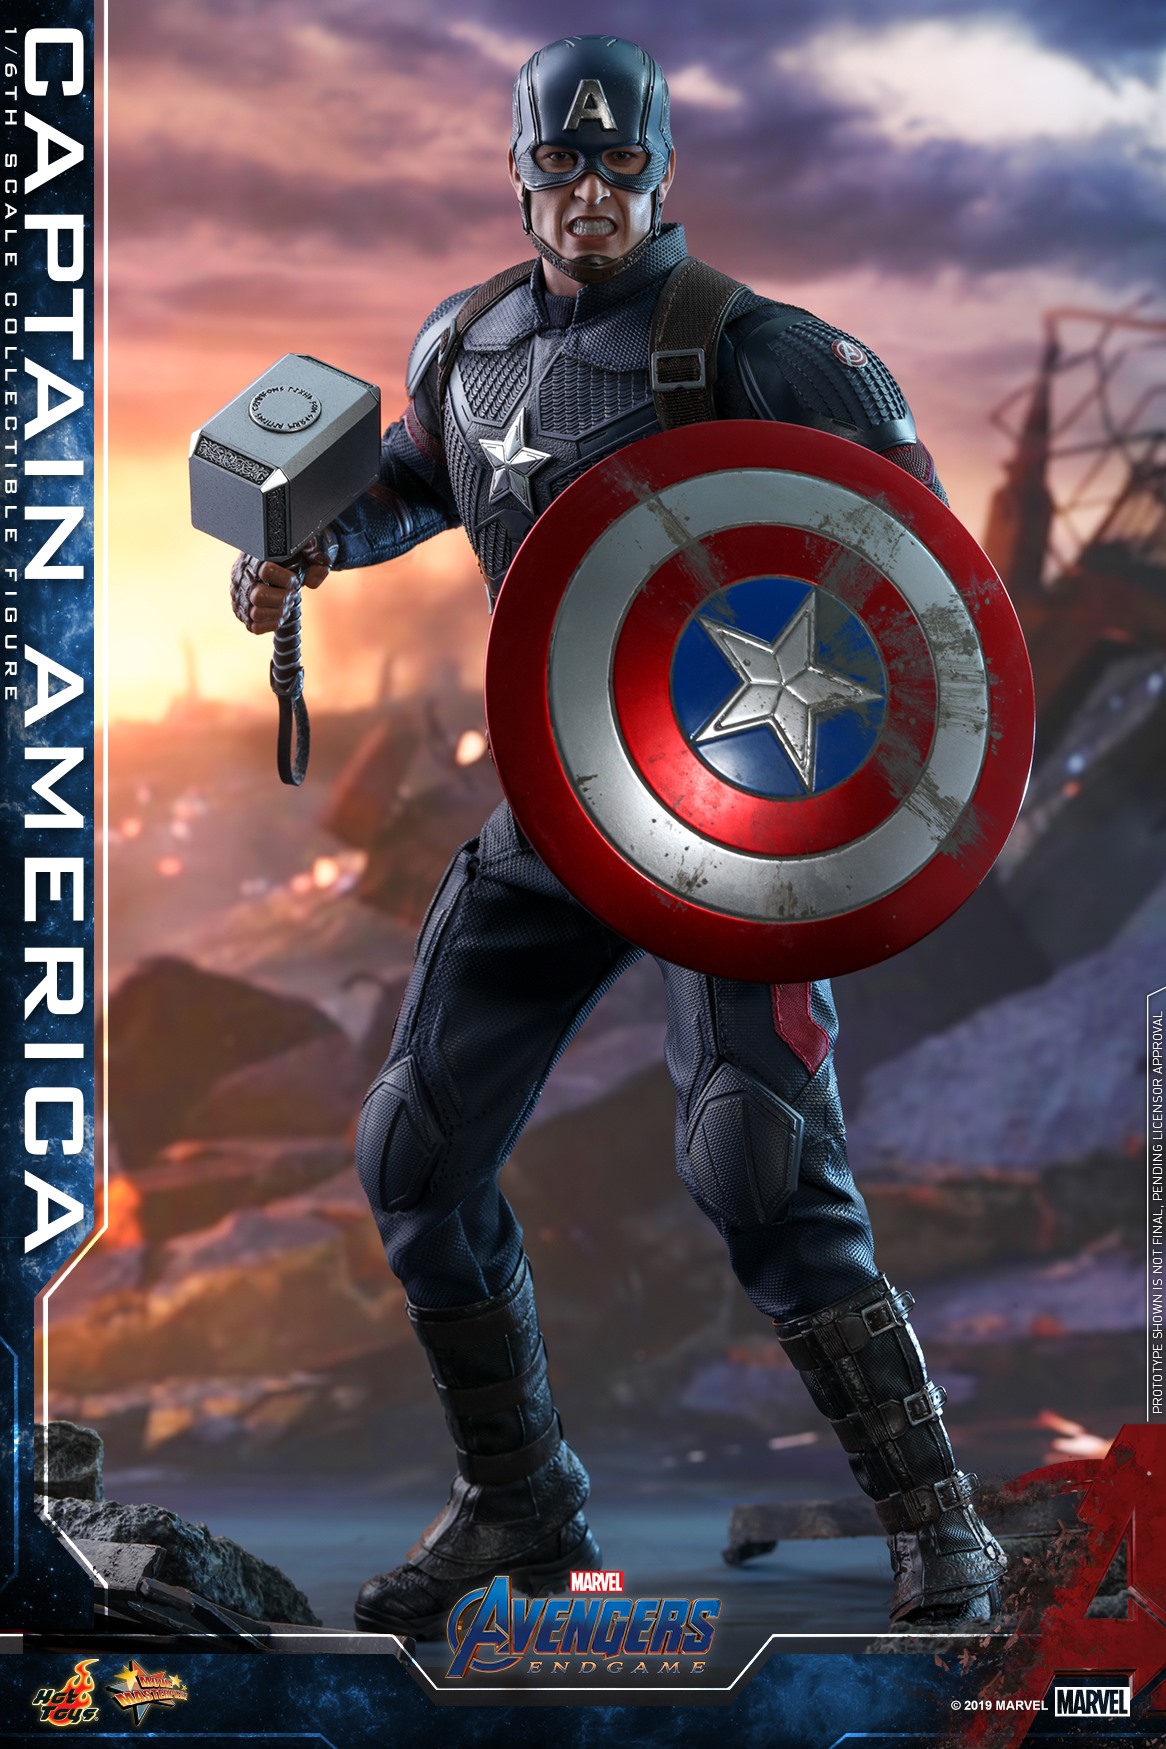 Hot-Toys-Avengers-Endgame-Captain-America-006.jpg